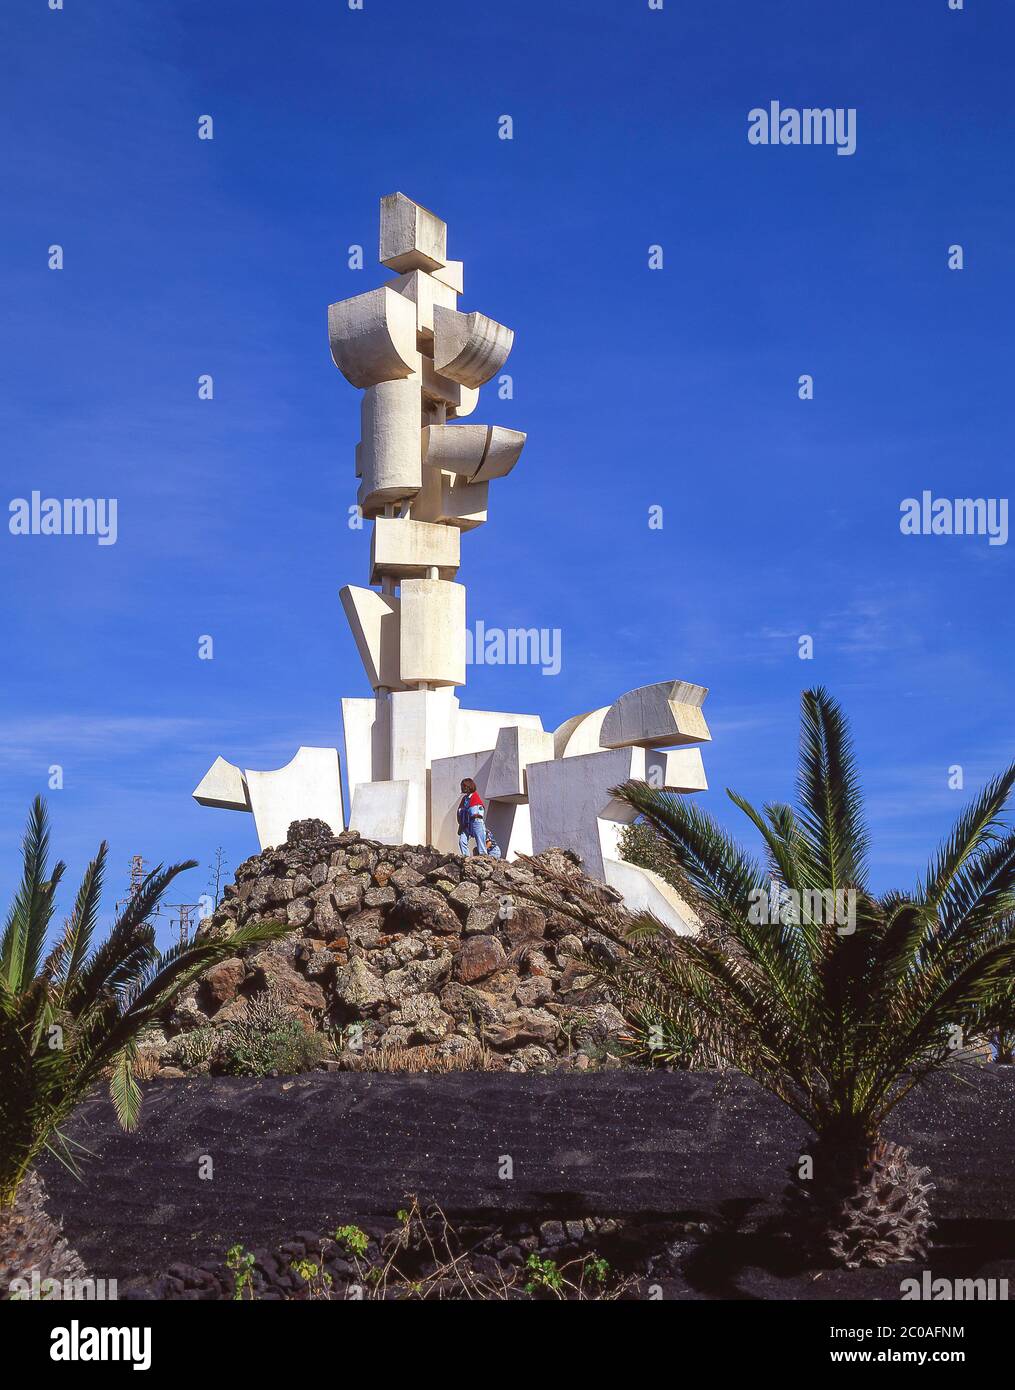 Monumento al Campesino von Cesar Manrique, San Bartolome, Lanzarote, Kanarische Inseln, Königreich Spanien Stockfoto